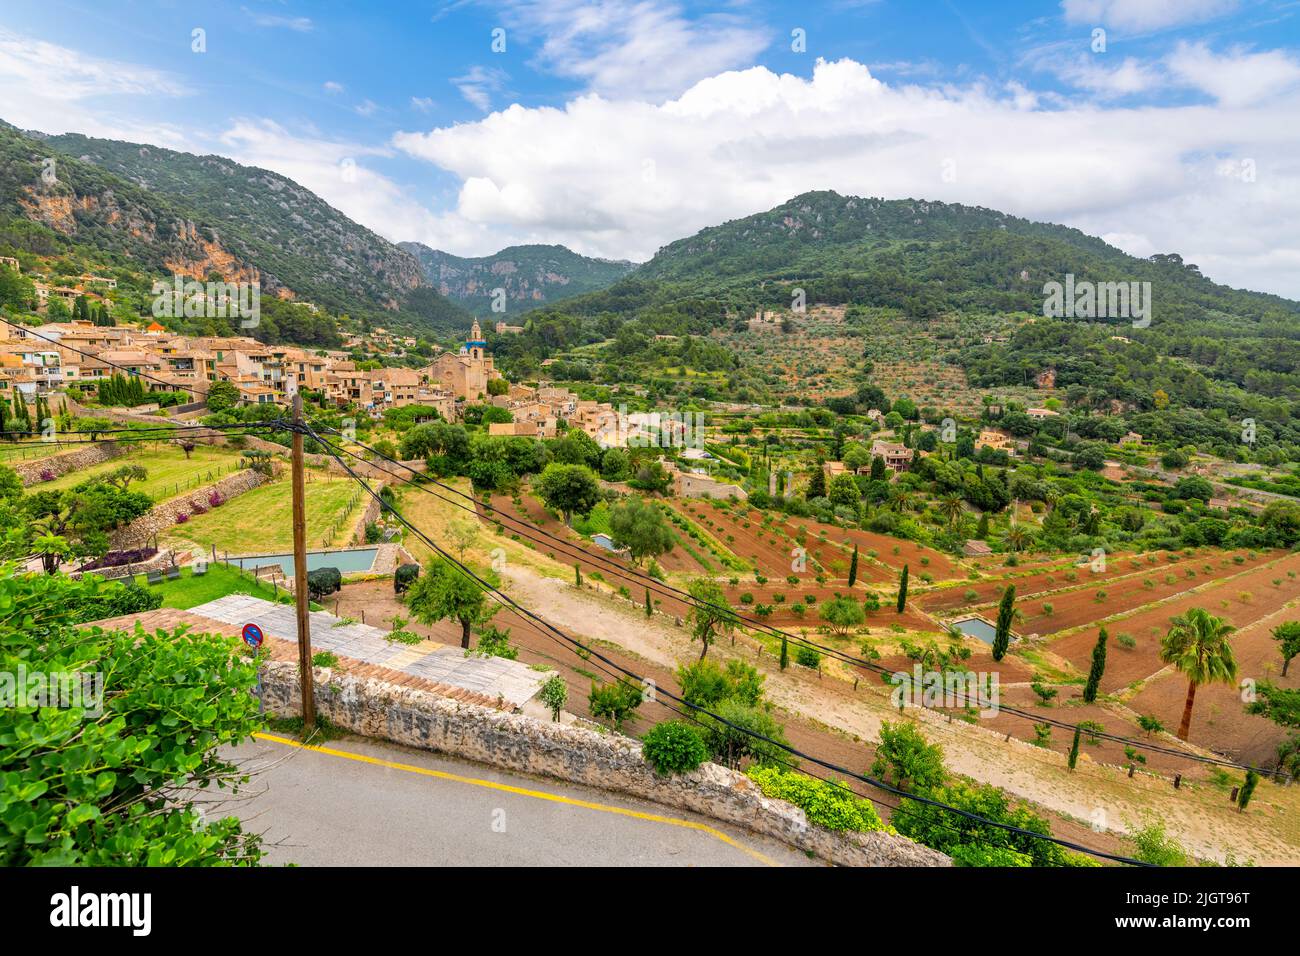 Vue sur les collines de la vallée de Soller et des villages pittoresques de Valldemossa, en Espagne, sur l'île de Majorque. Banque D'Images